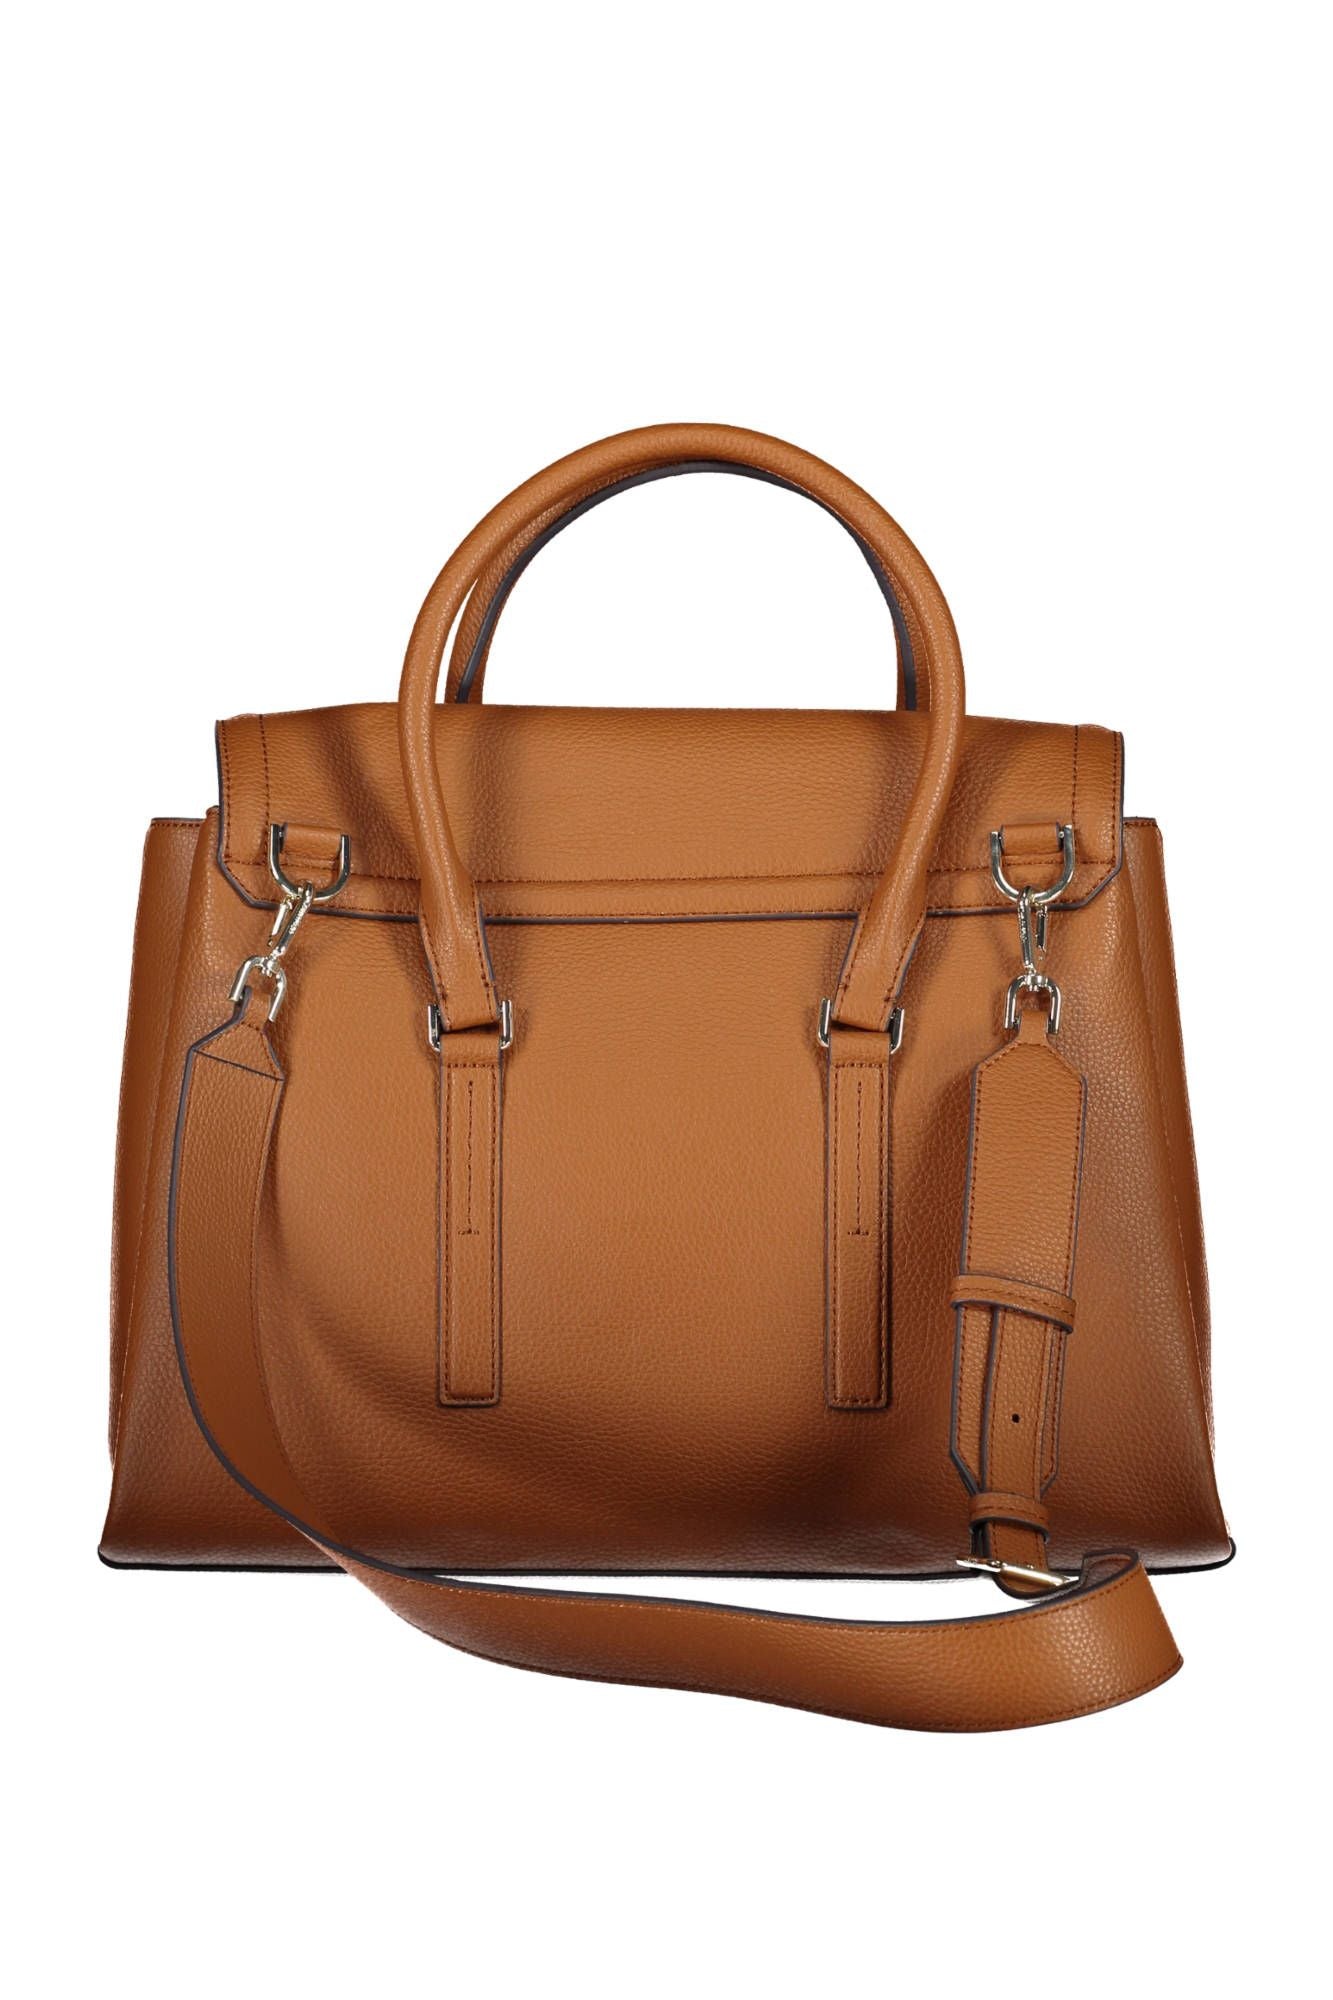 Elegant Brown Handbag with Contrasting Details